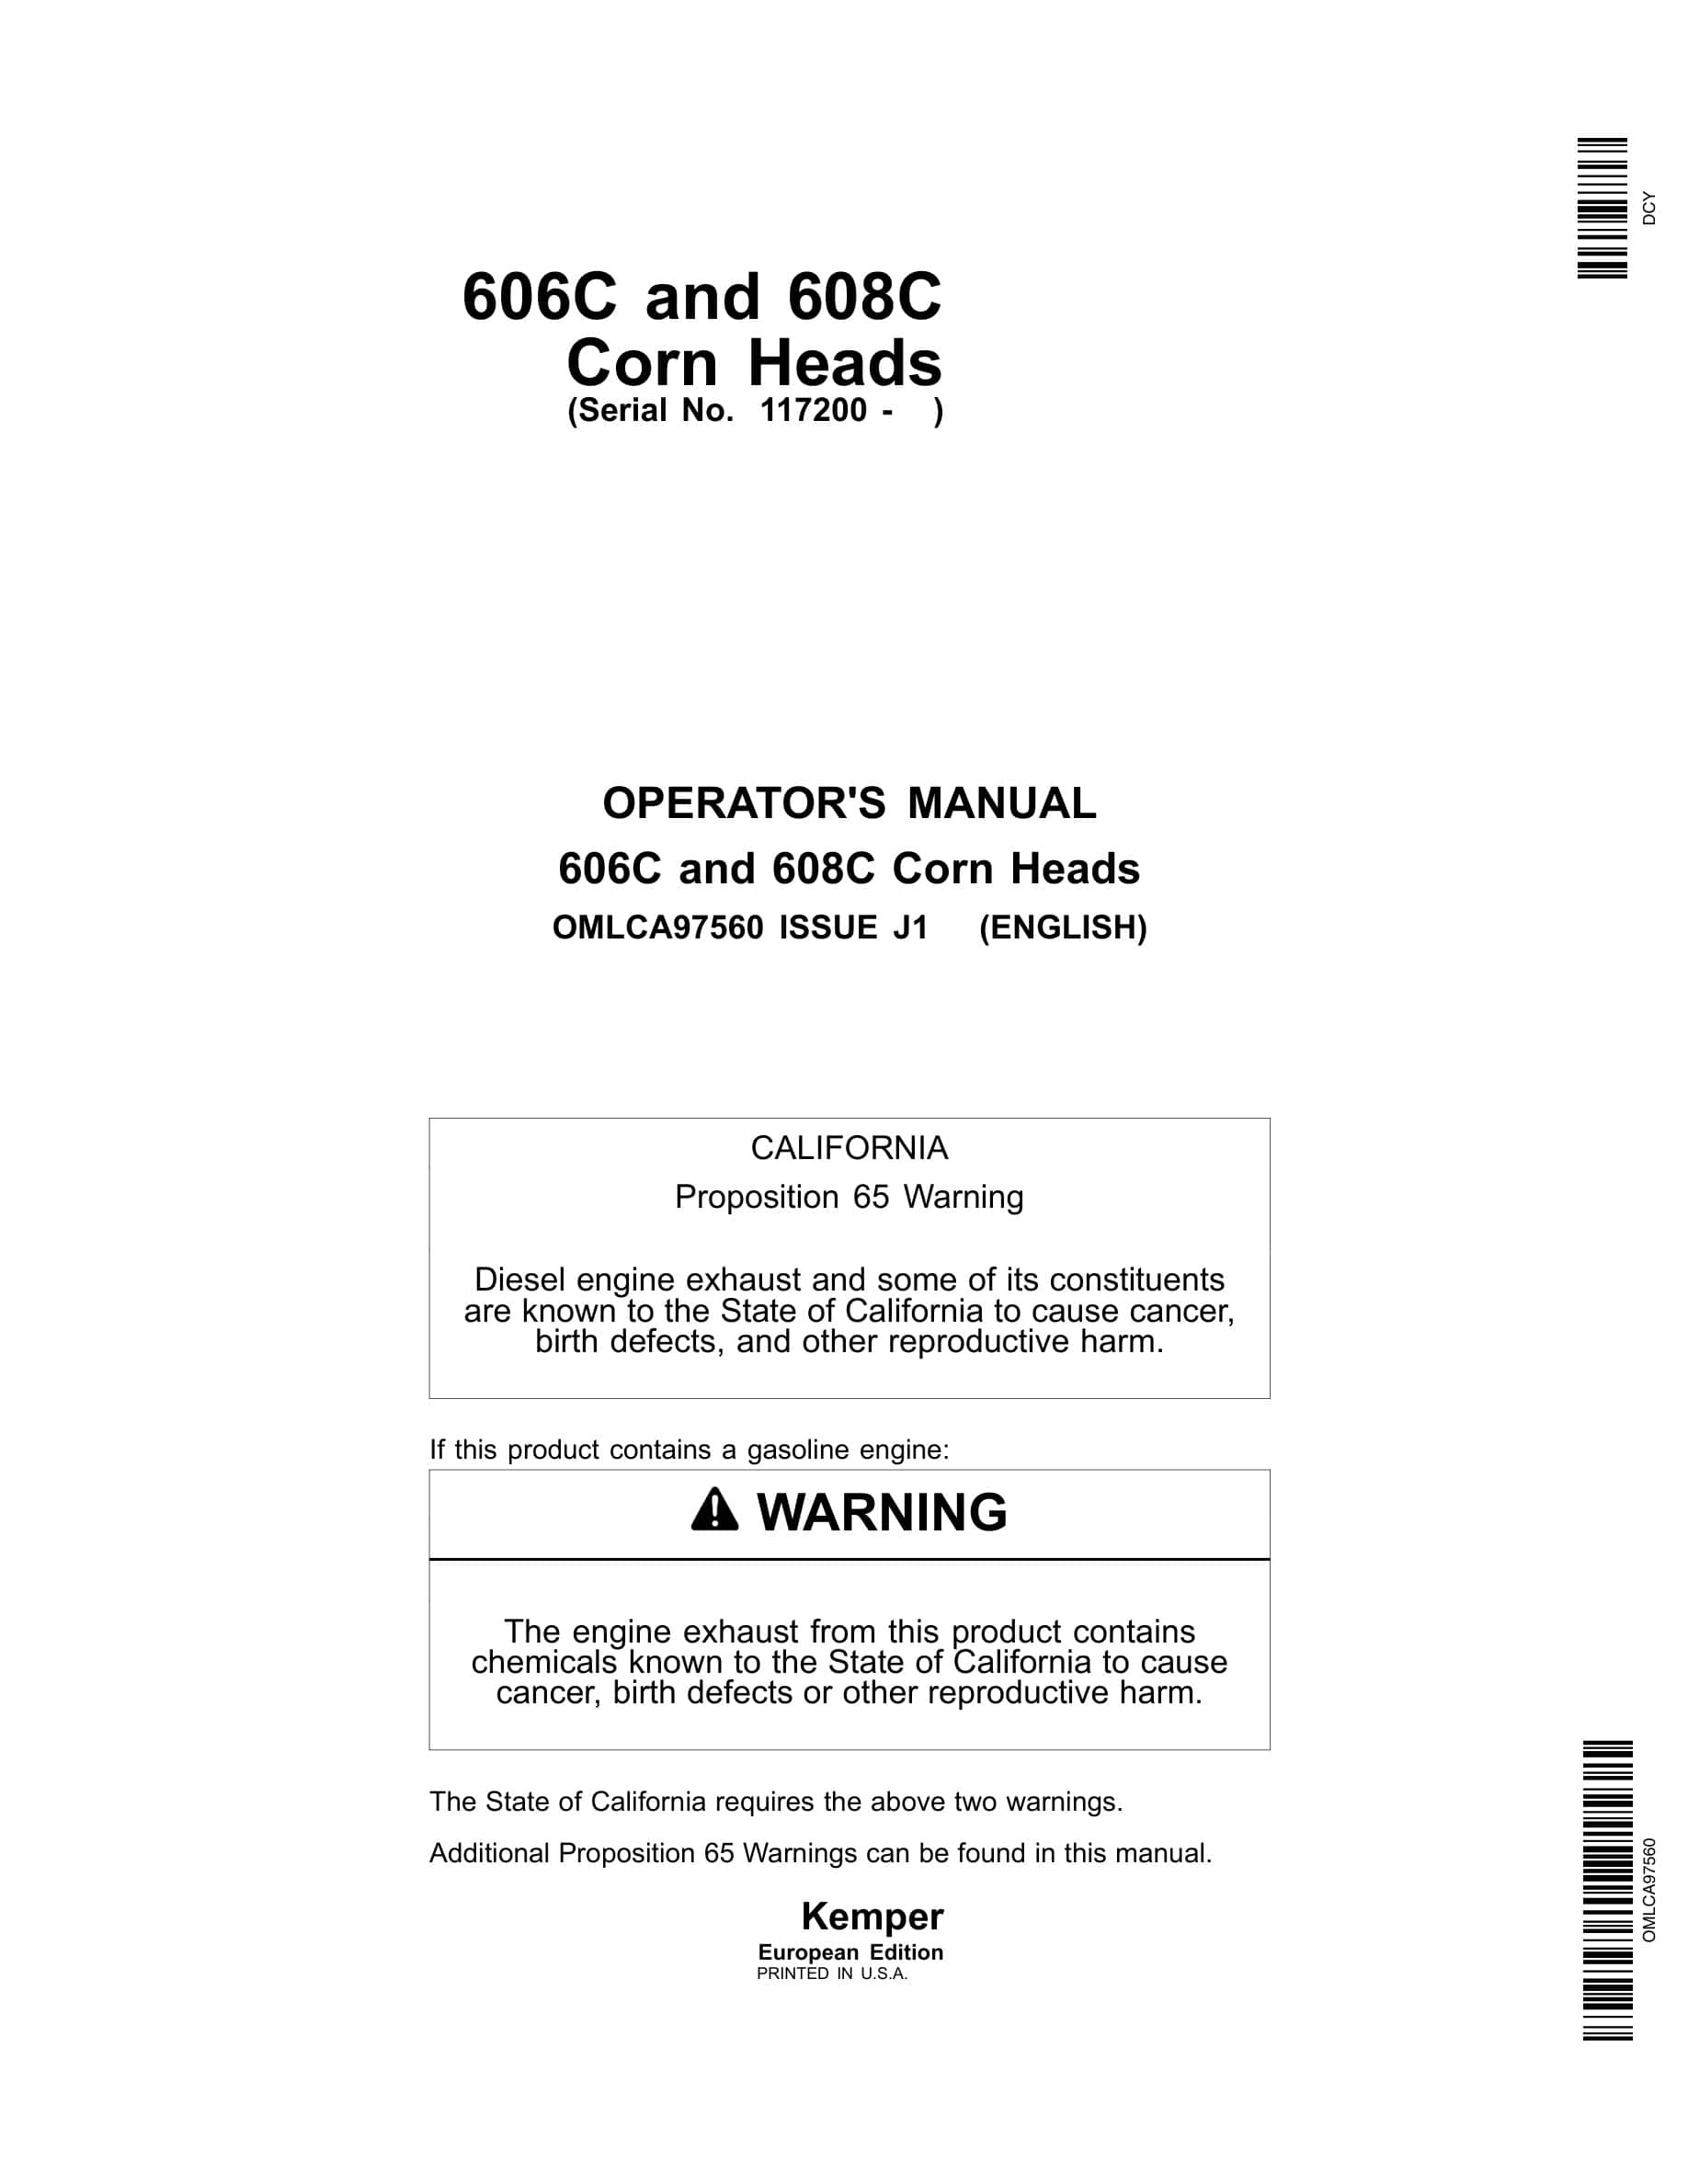 John Deere 606C and 608C Corn Heads Operator Manual OMLCA97560-1